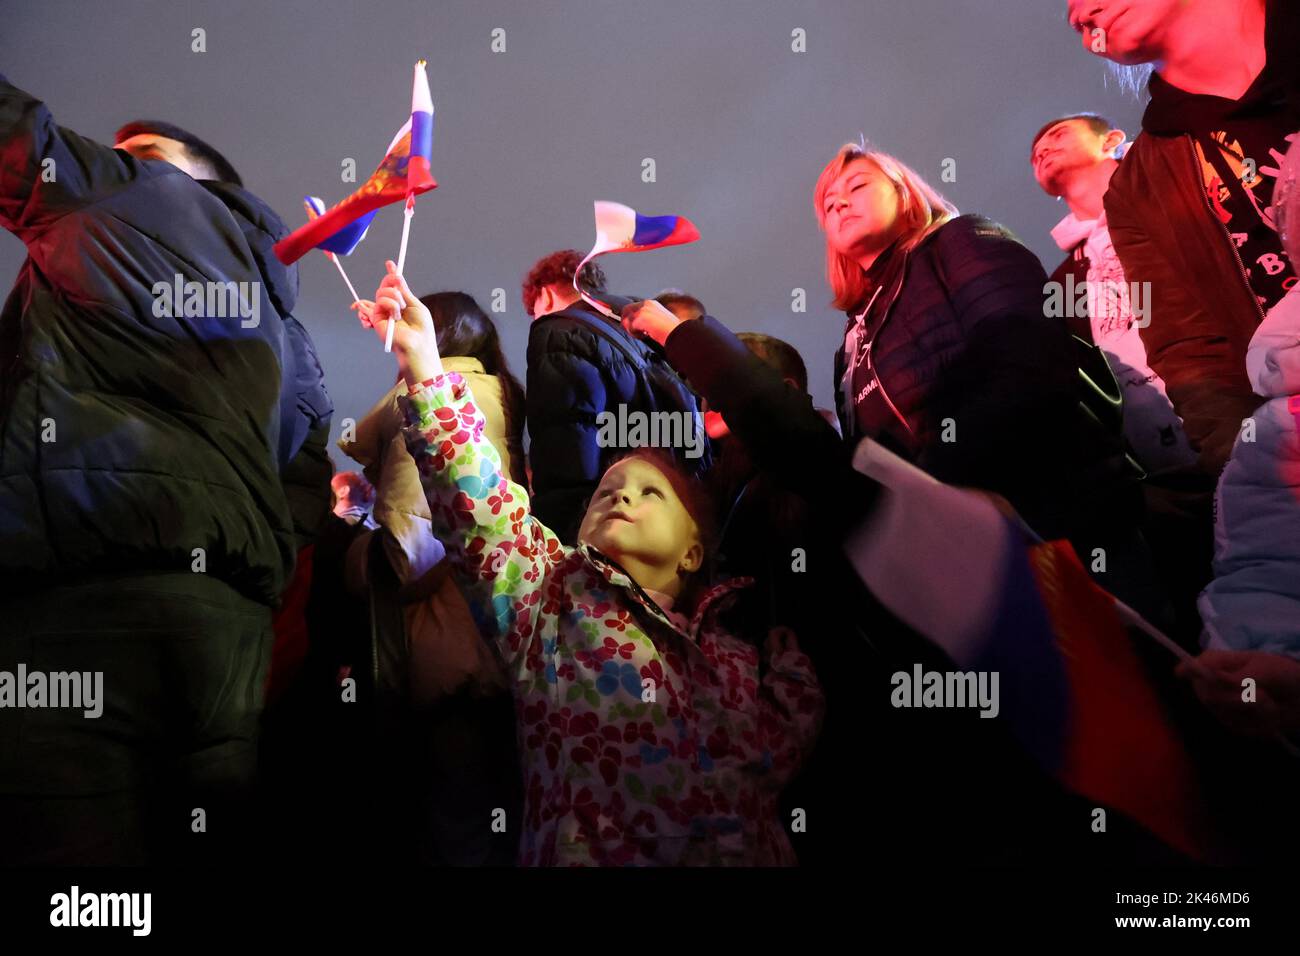 Les gens assistent à un concert marquant l'annexion déclarée des territoires sous contrôle russe de quatre régions ukrainiennes de Donetsk, Luhansk, Kherson et Zaporizhzhia, après avoir tenu ce que les autorités russes ont appelé des référendums dans les zones occupées de l'Ukraine qui ont été condamnés par Kiev et les gouvernements du monde entier, sur la place Rouge dans le centre de Moscou, en Russie, 30 septembre 2022. PHOTOGRAPHE REUTERS/REUTERS Banque D'Images